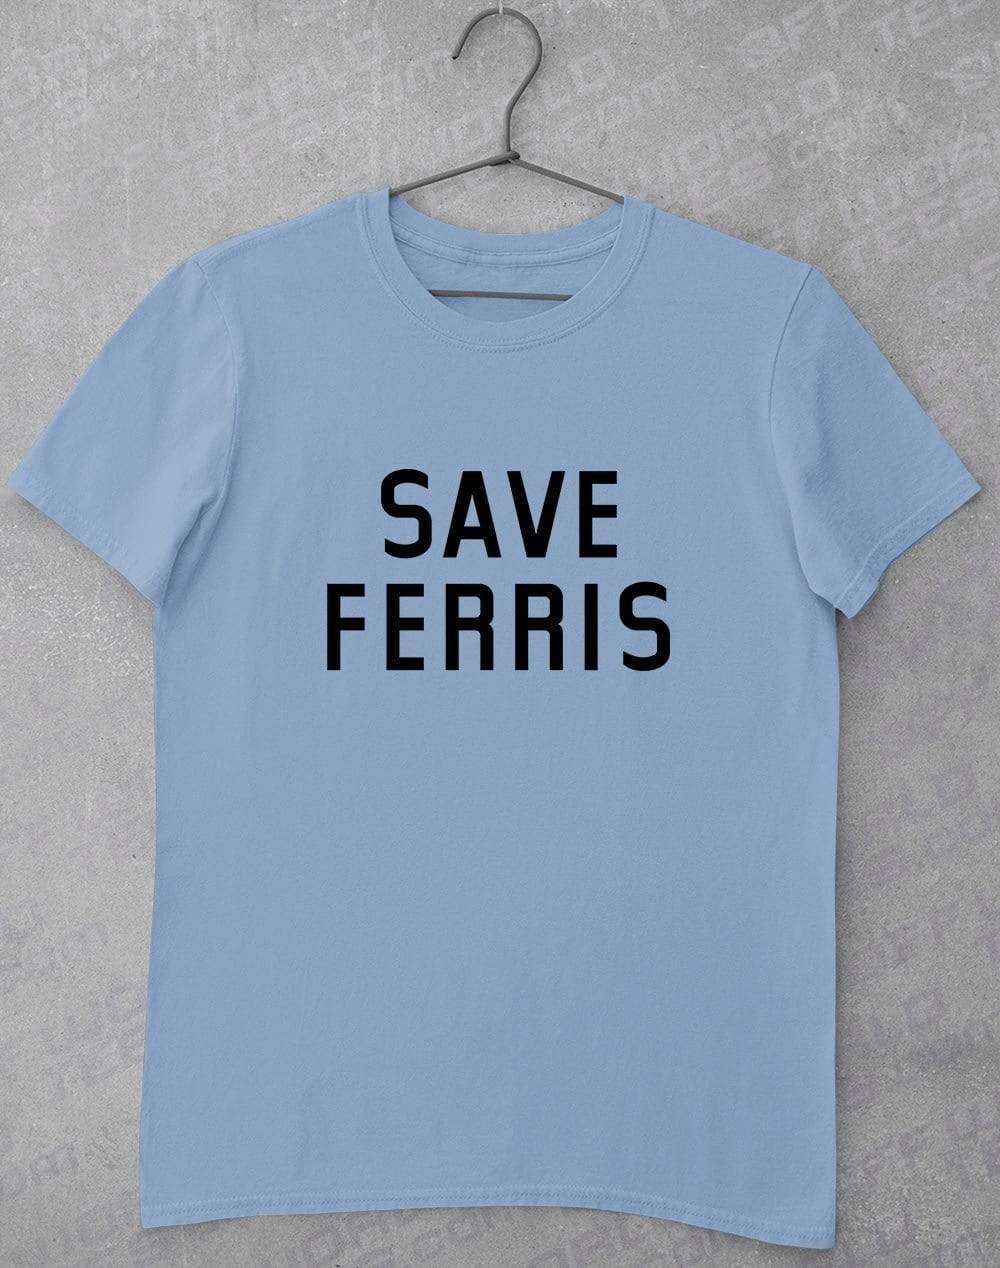 Save Ferris T-Shirt S / Light Blue  - Off World Tees